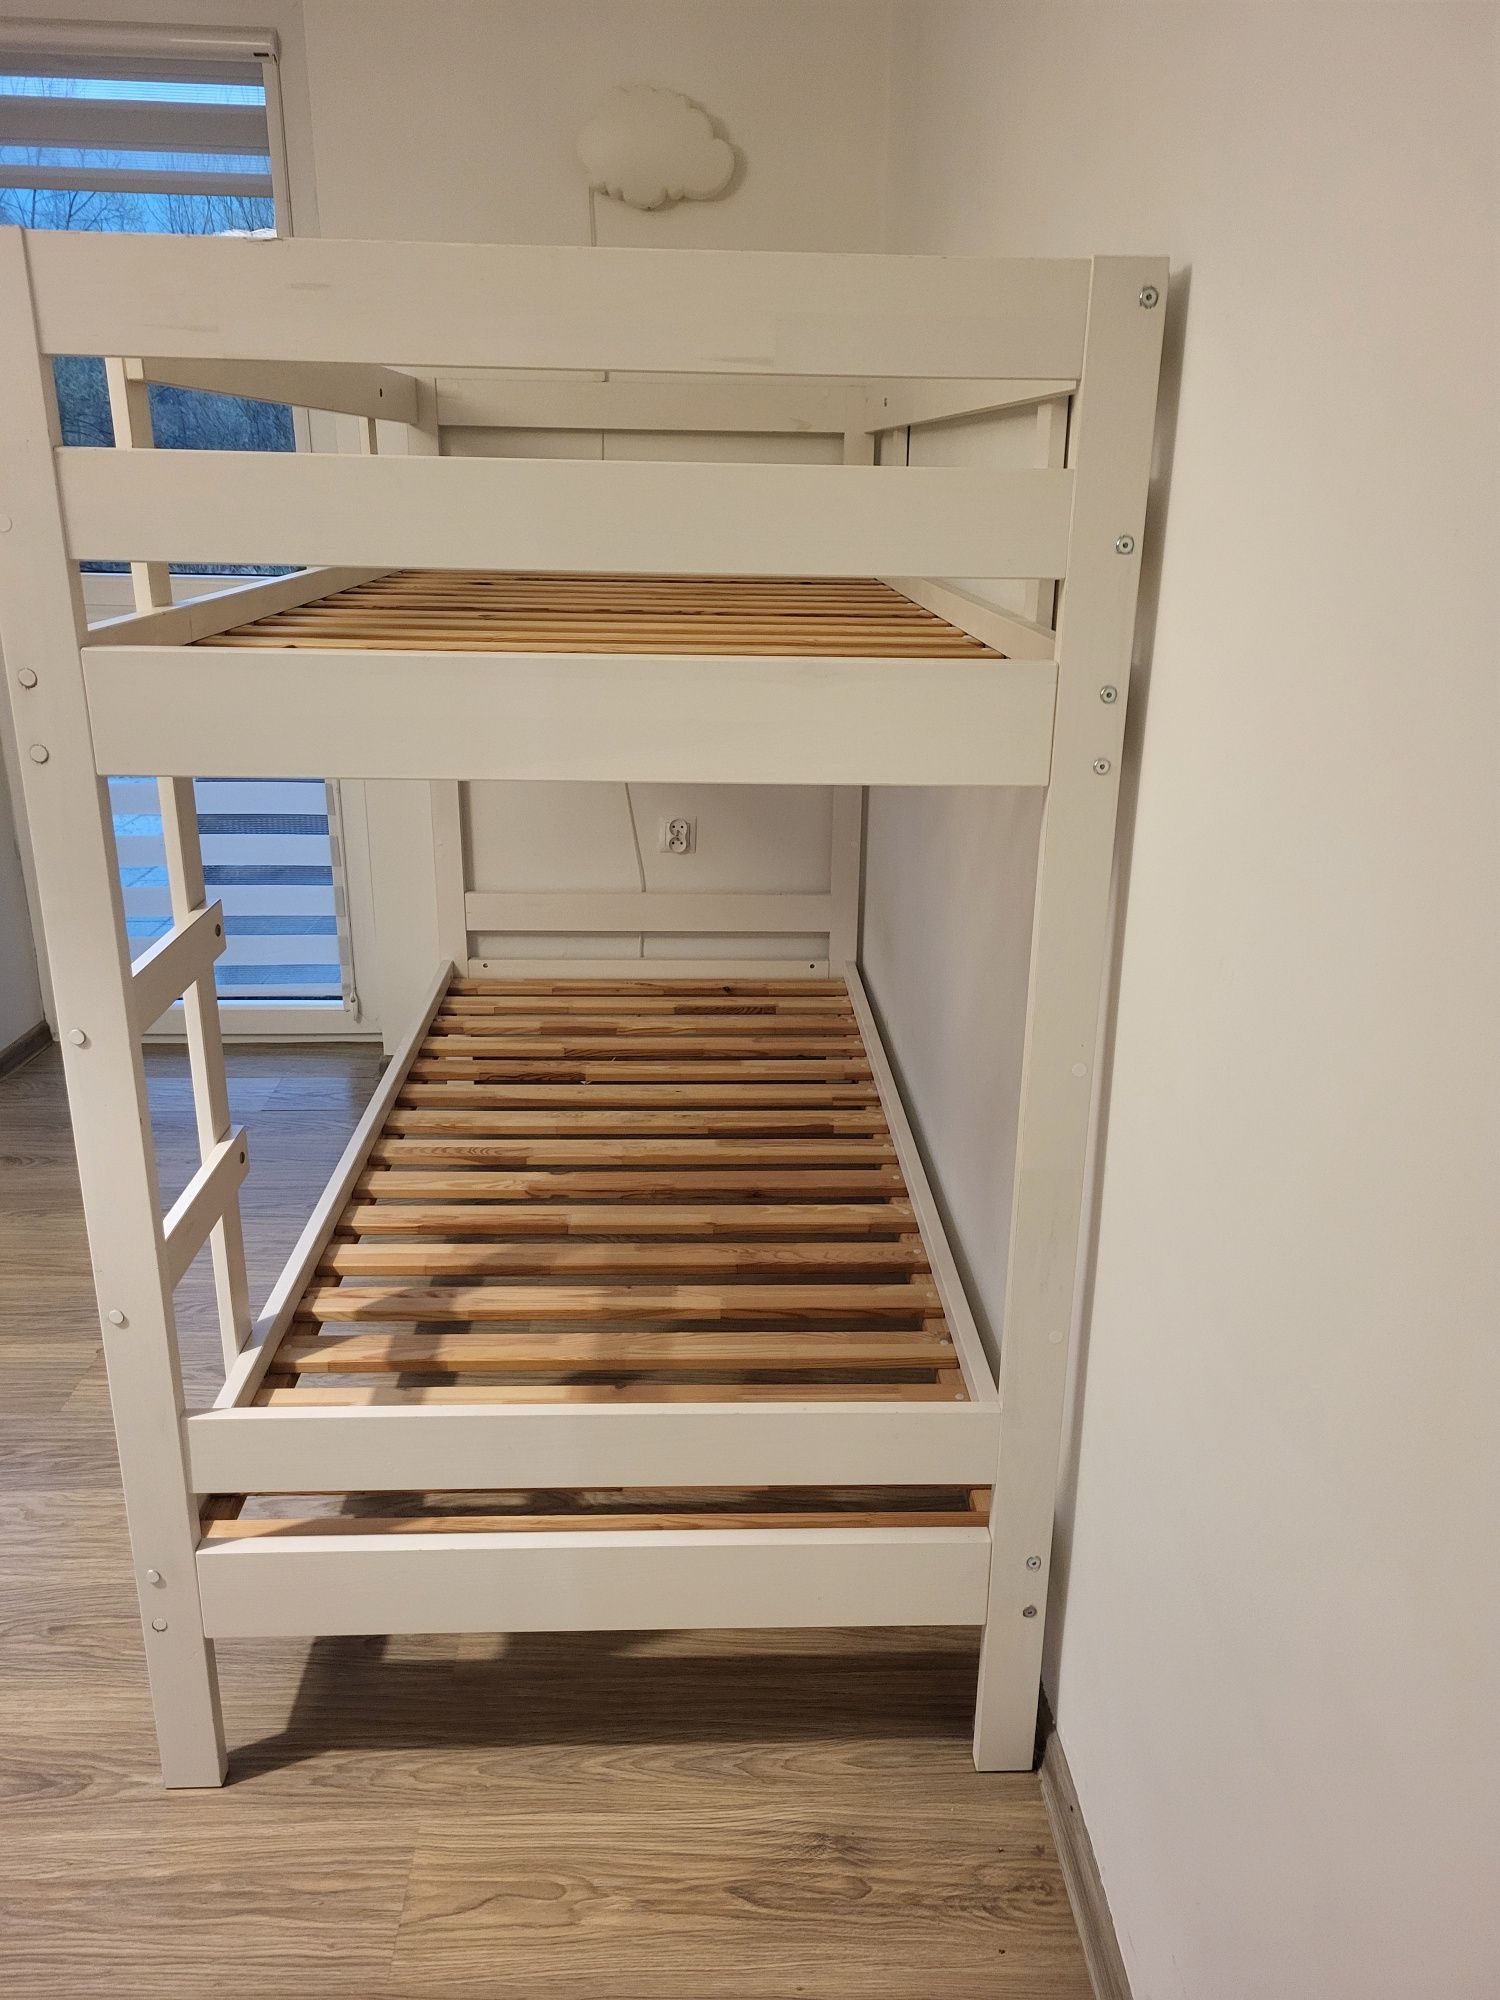 Łóżko piętrowe Ikea Mydal